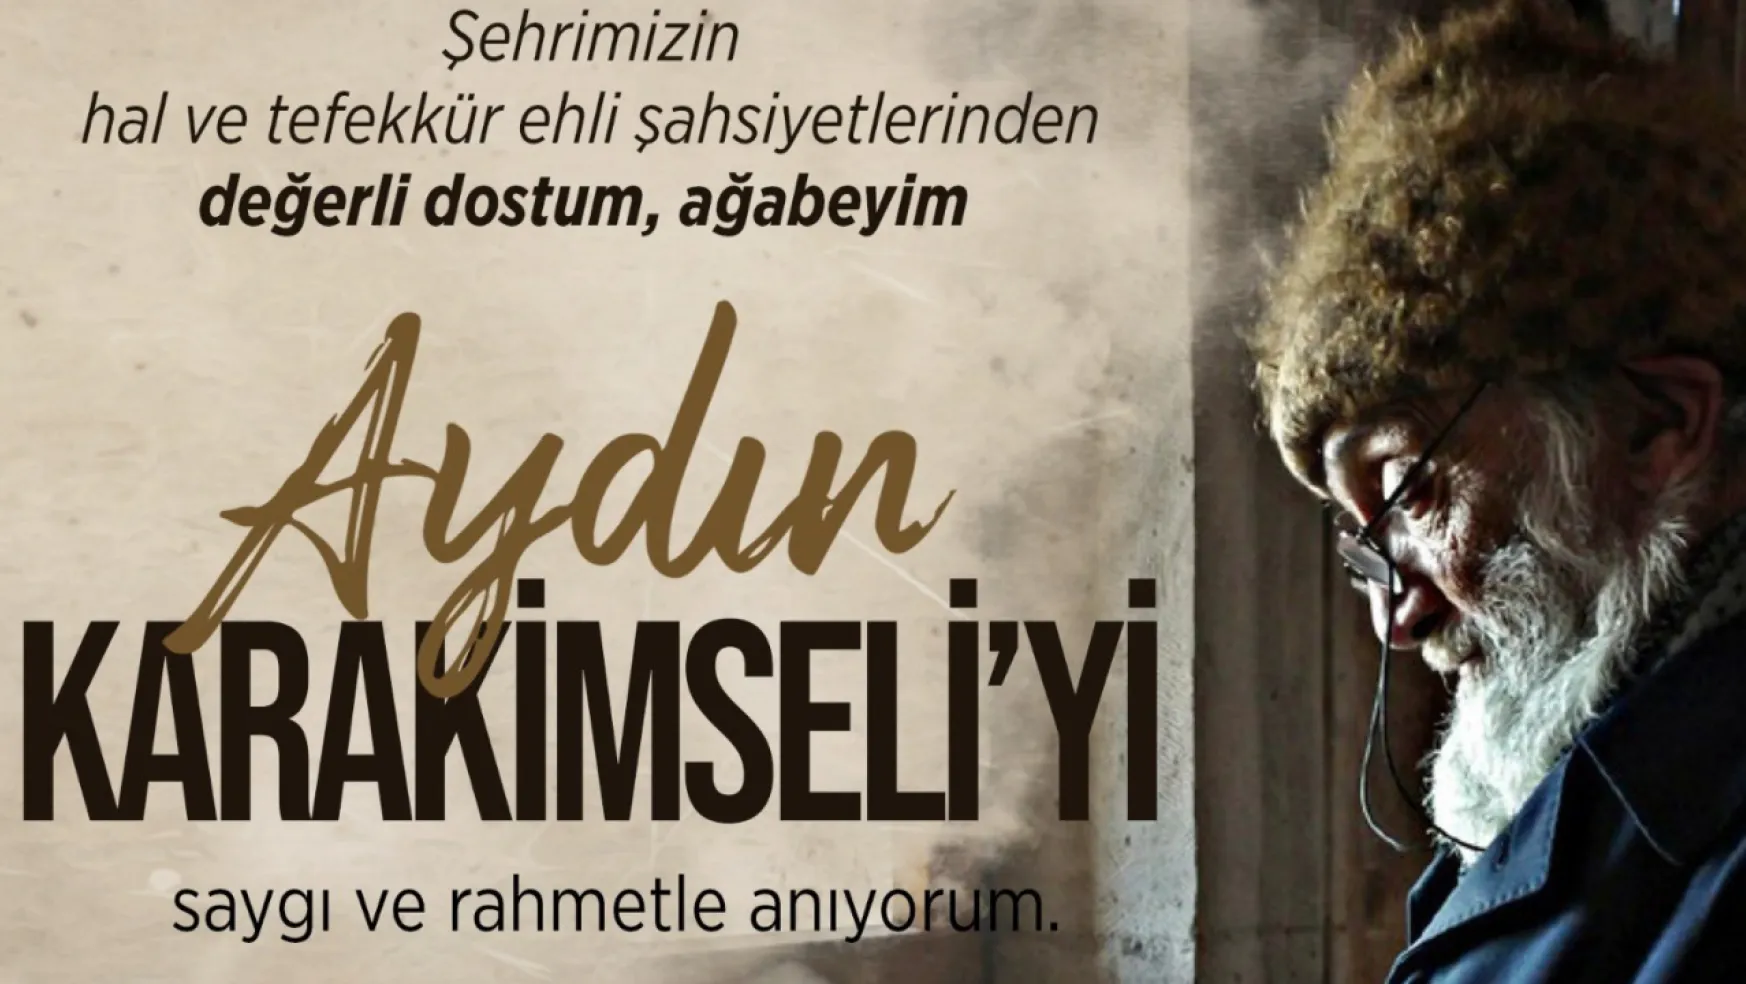 Gazetemiz Kurucularından Aydın Ağabey'i rahmetle anıyoruz